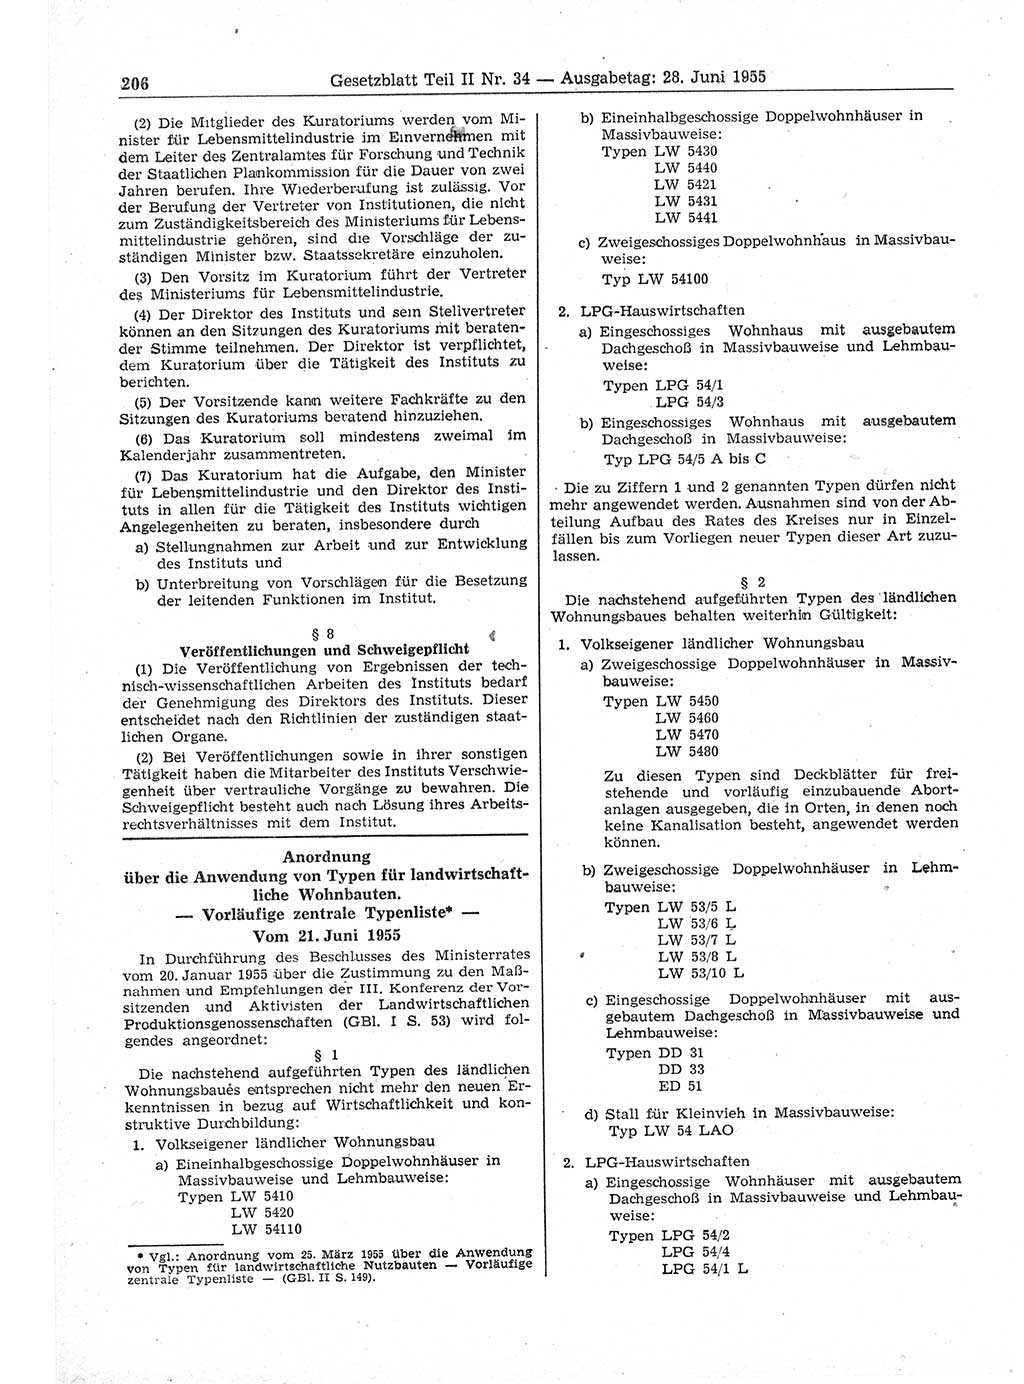 Gesetzblatt (GBl.) der Deutschen Demokratischen Republik (DDR) Teil ⅠⅠ 1955, Seite 206 (GBl. DDR ⅠⅠ 1955, S. 206)